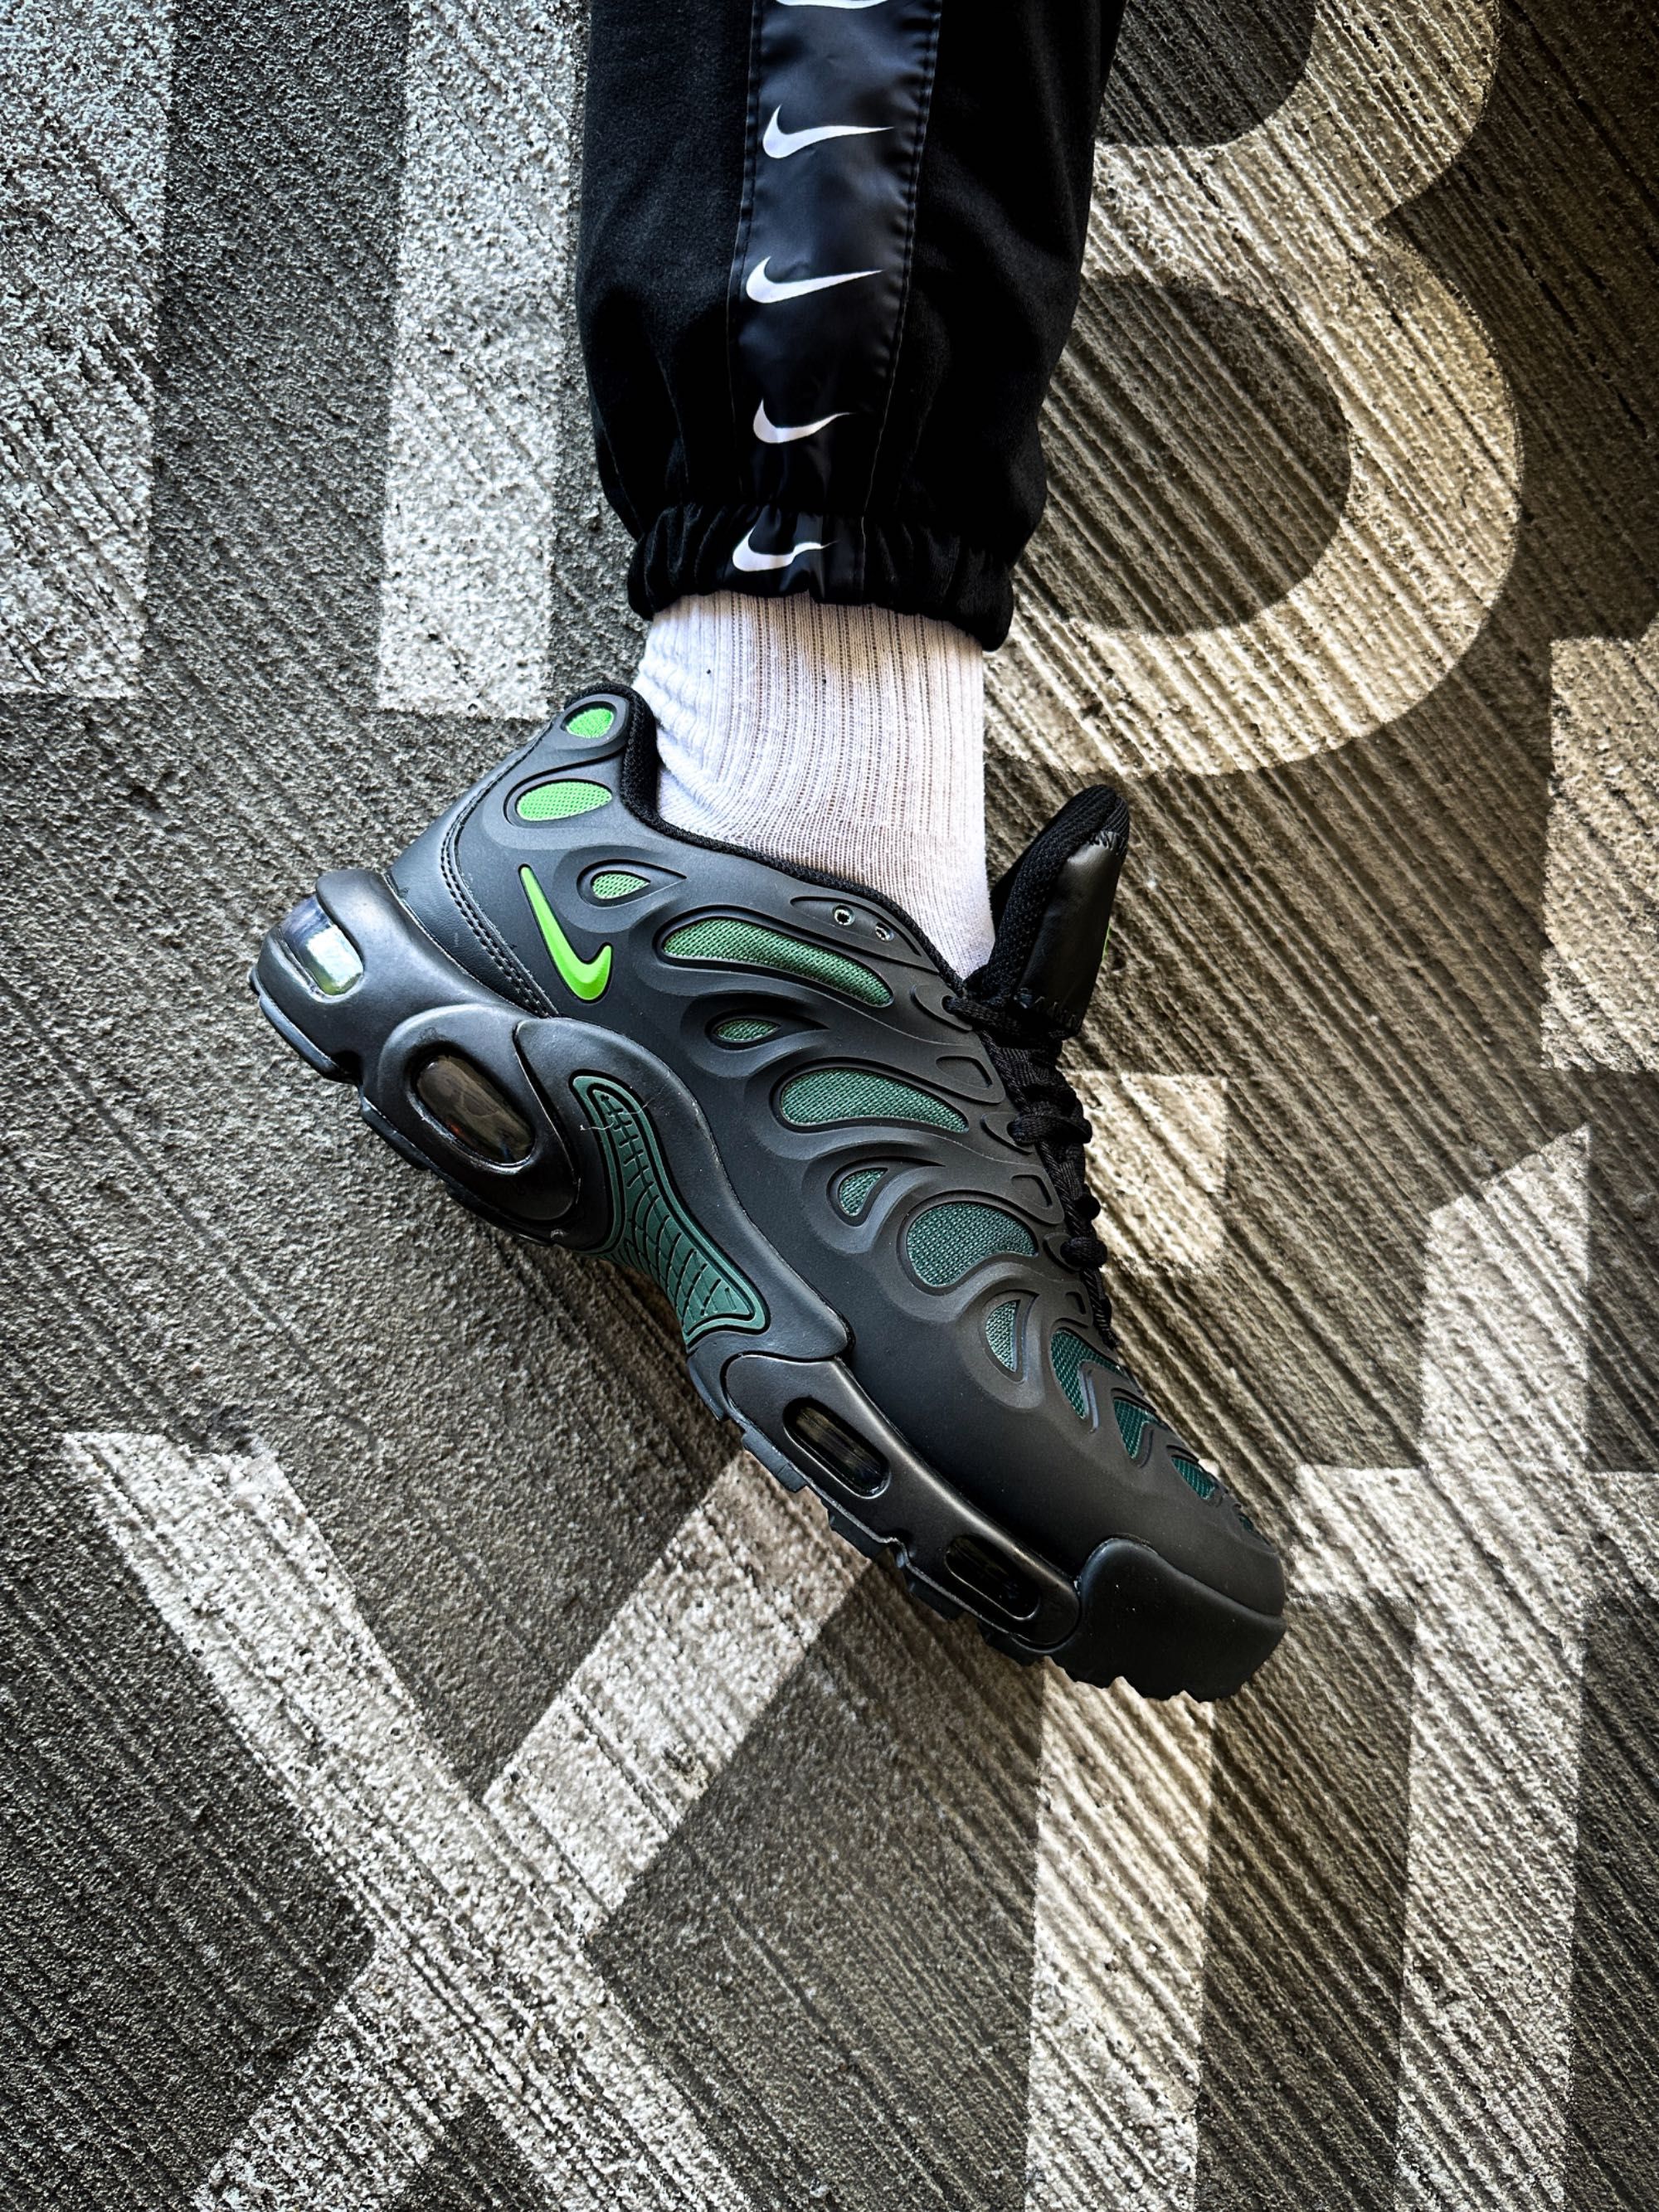 Мужские кроссовки Nike Air Max Drift Plus "Volt" Размеры 41-45